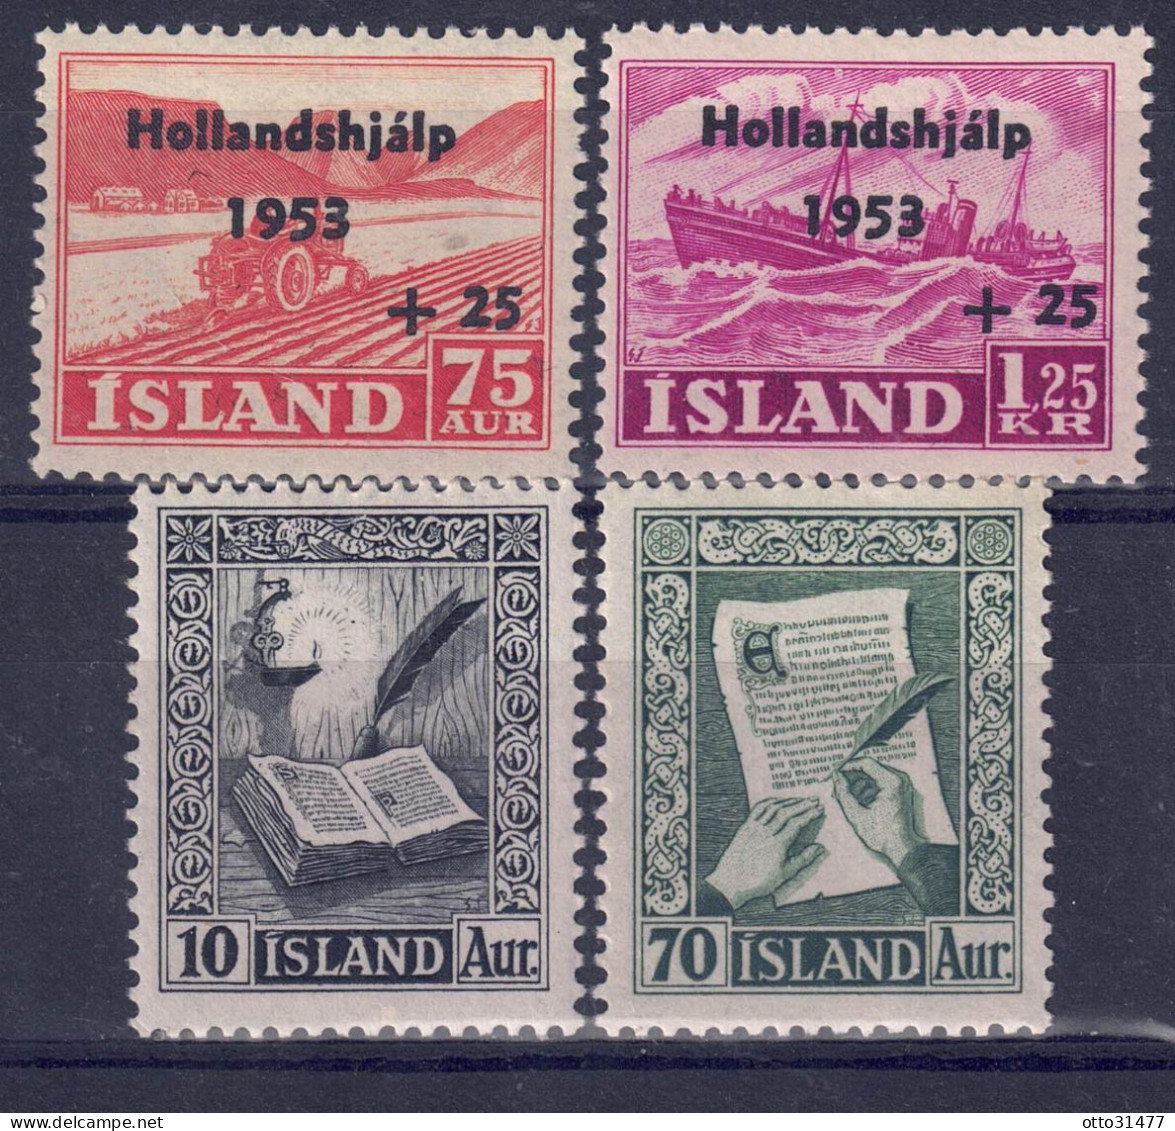 Island 1953 - Markenlot Aus Nr. 285 - 288, Postfrisch ** / MNH - Ungebraucht